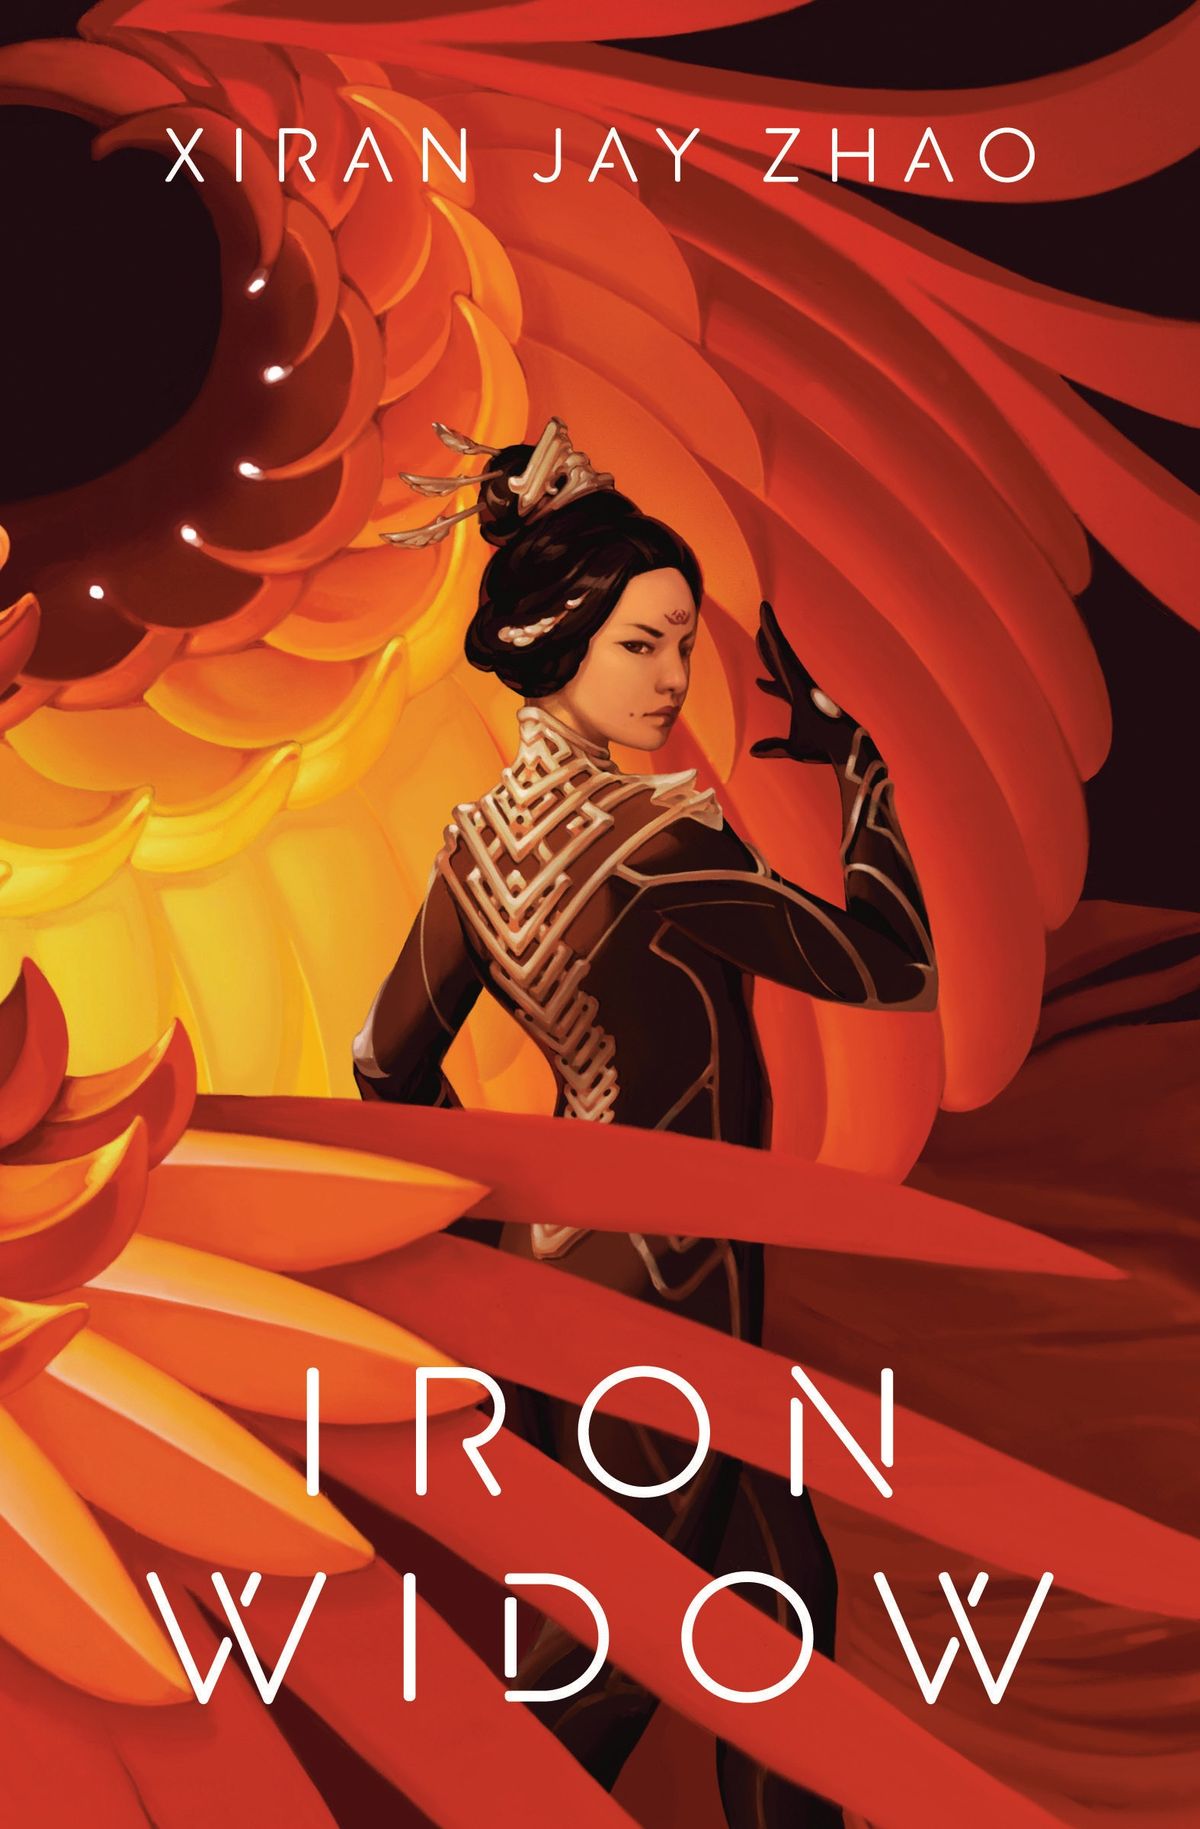 Iron Widow de Xiran Jay Zhao combine la culture chinoise ancienne et la science-fiction mecha